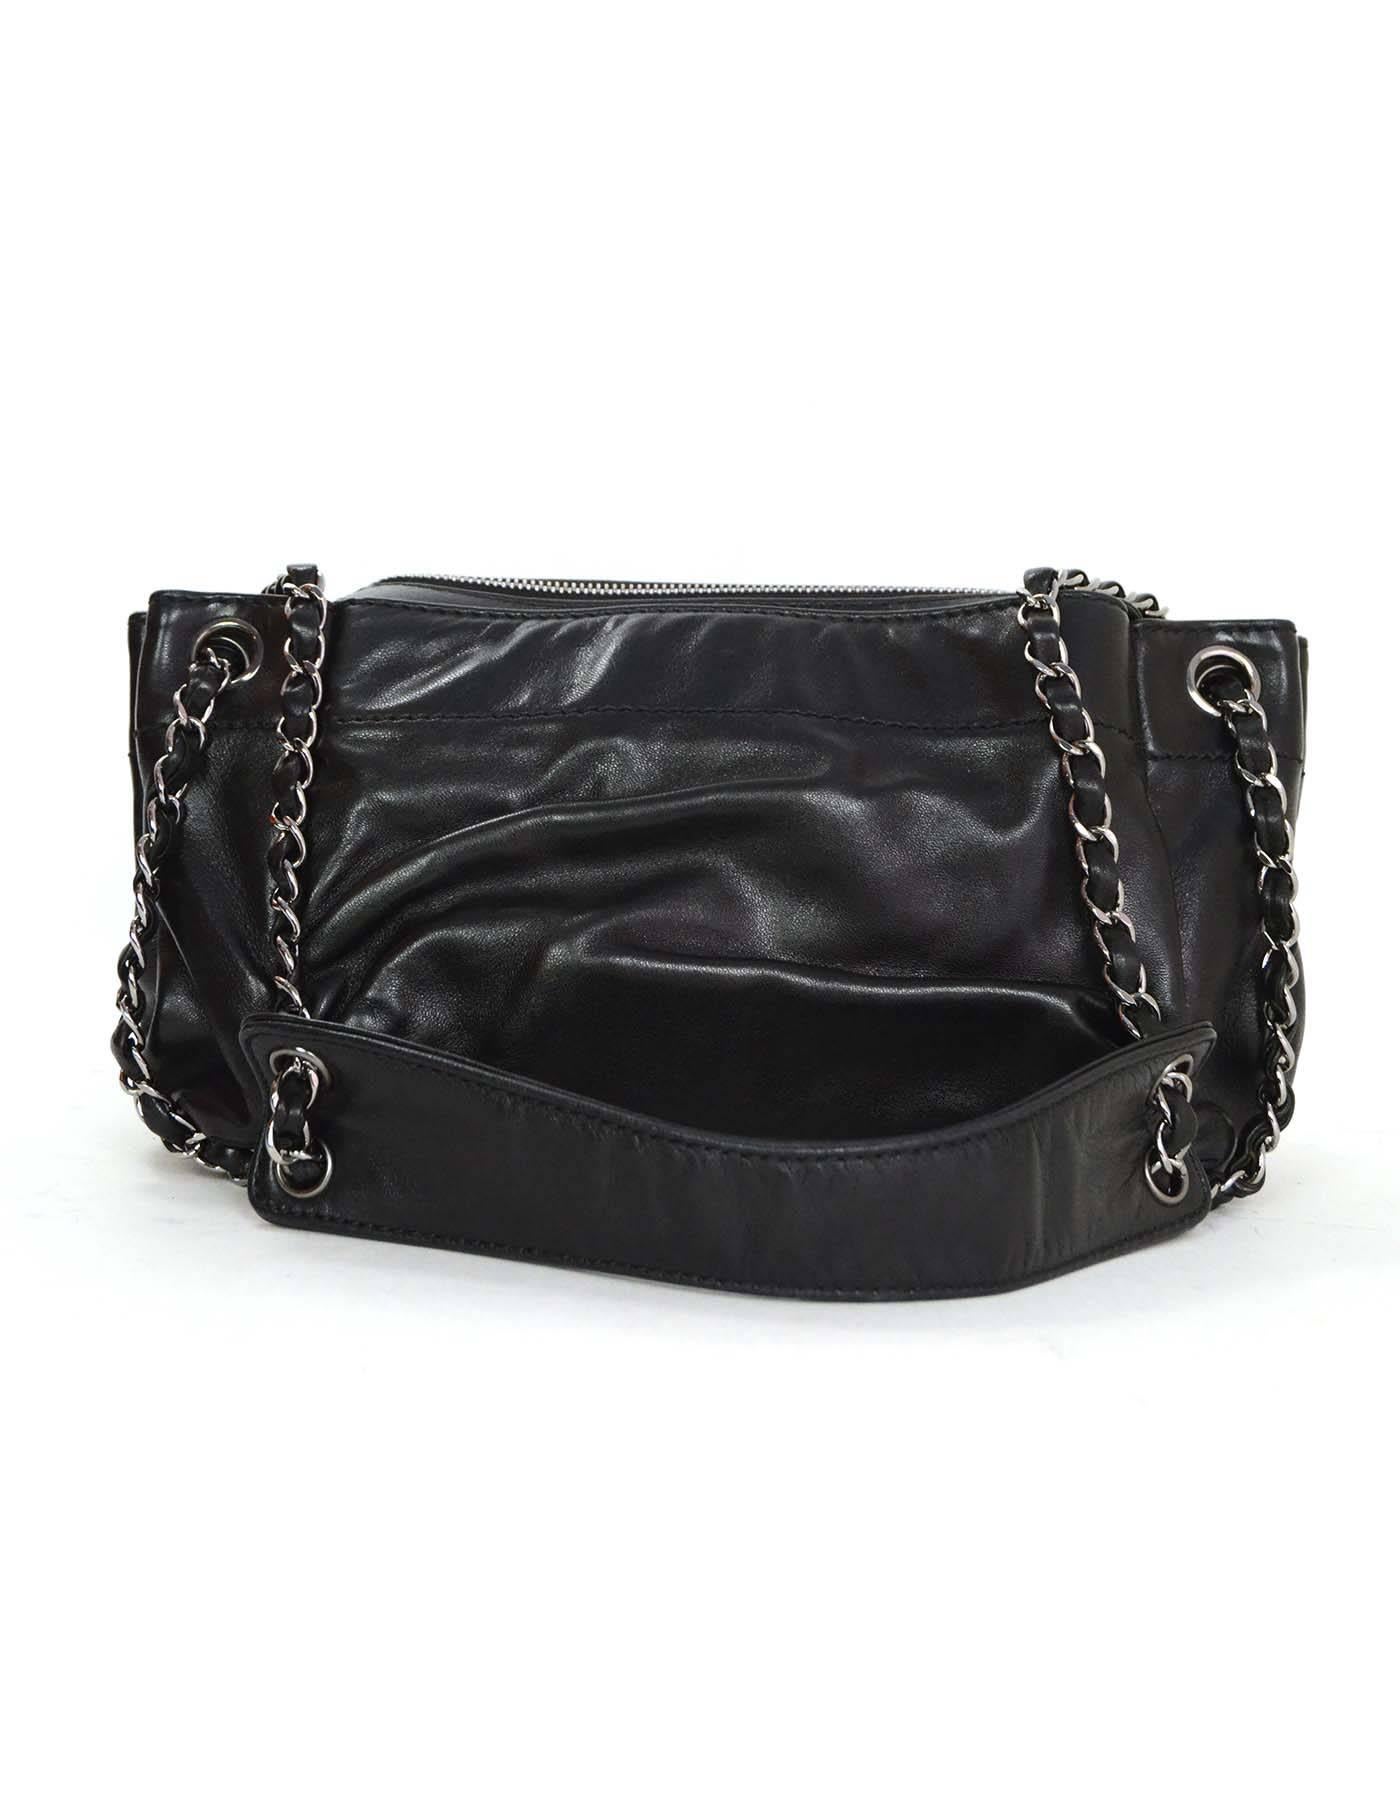 Women's Chanel Black Leather CHANEL Shoulder Bag